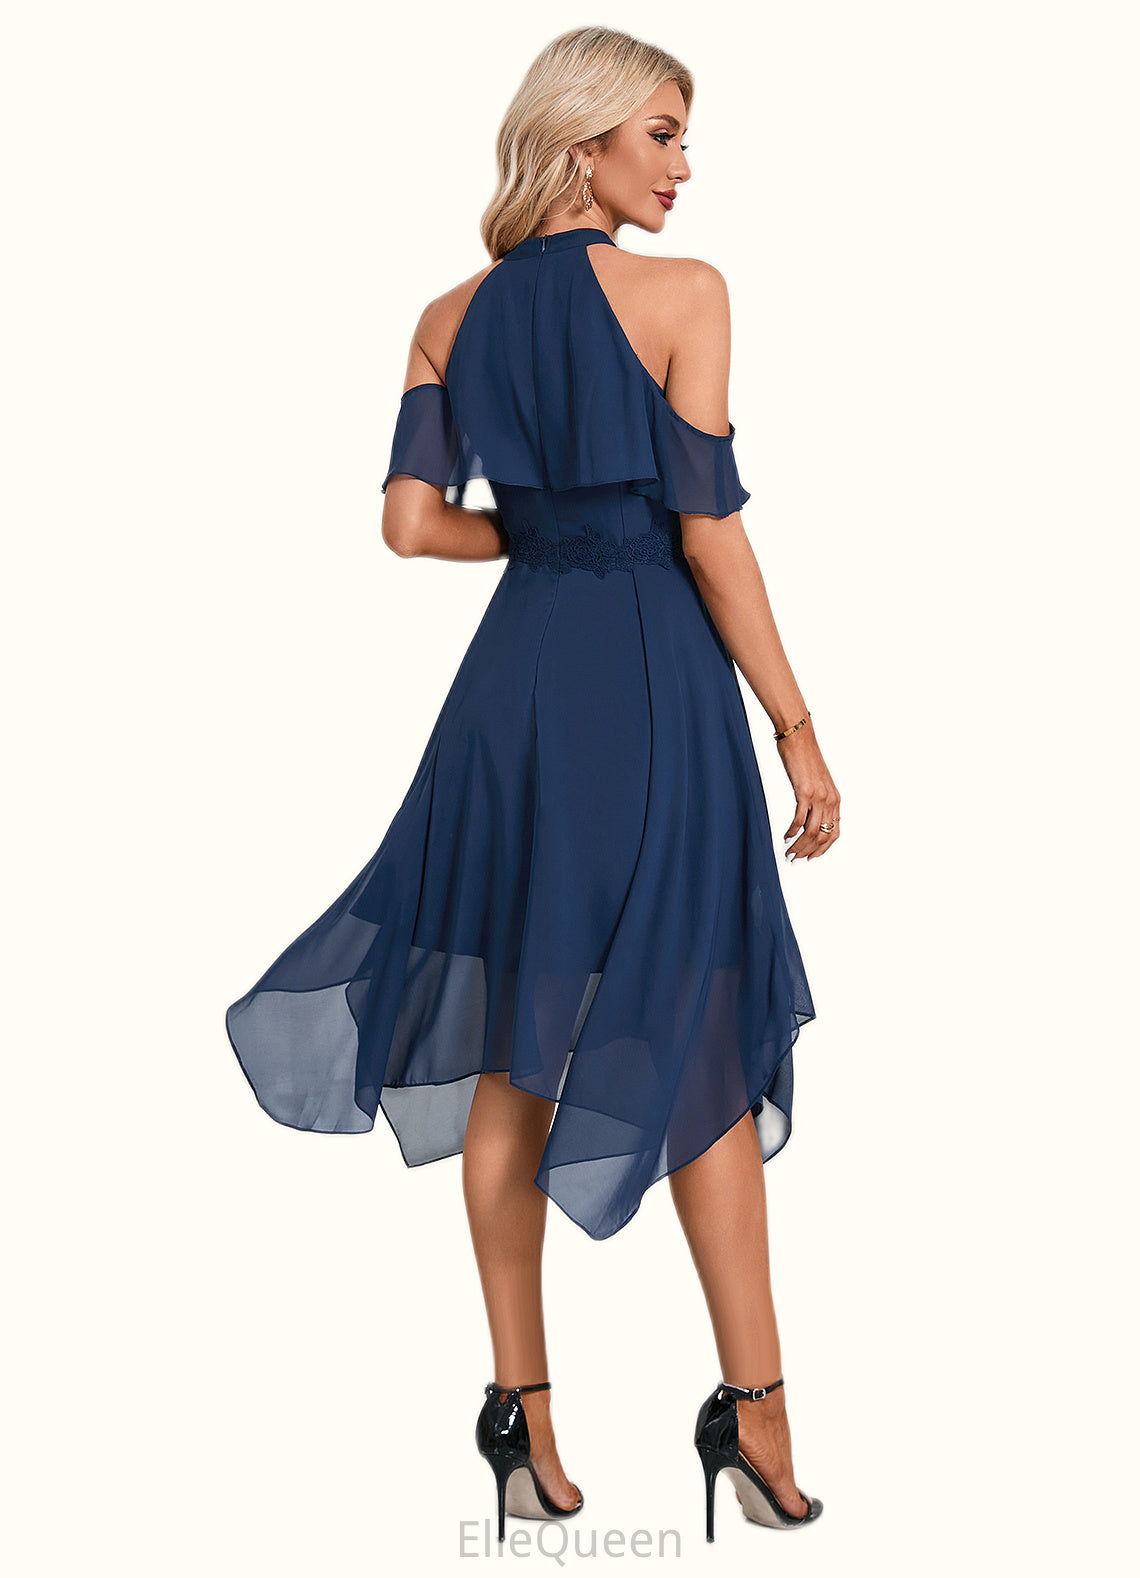 Alondra Appliques Lace Off the Shoulder Elegant A-line Chiffon Asymmetrical Dresses DGP0022489